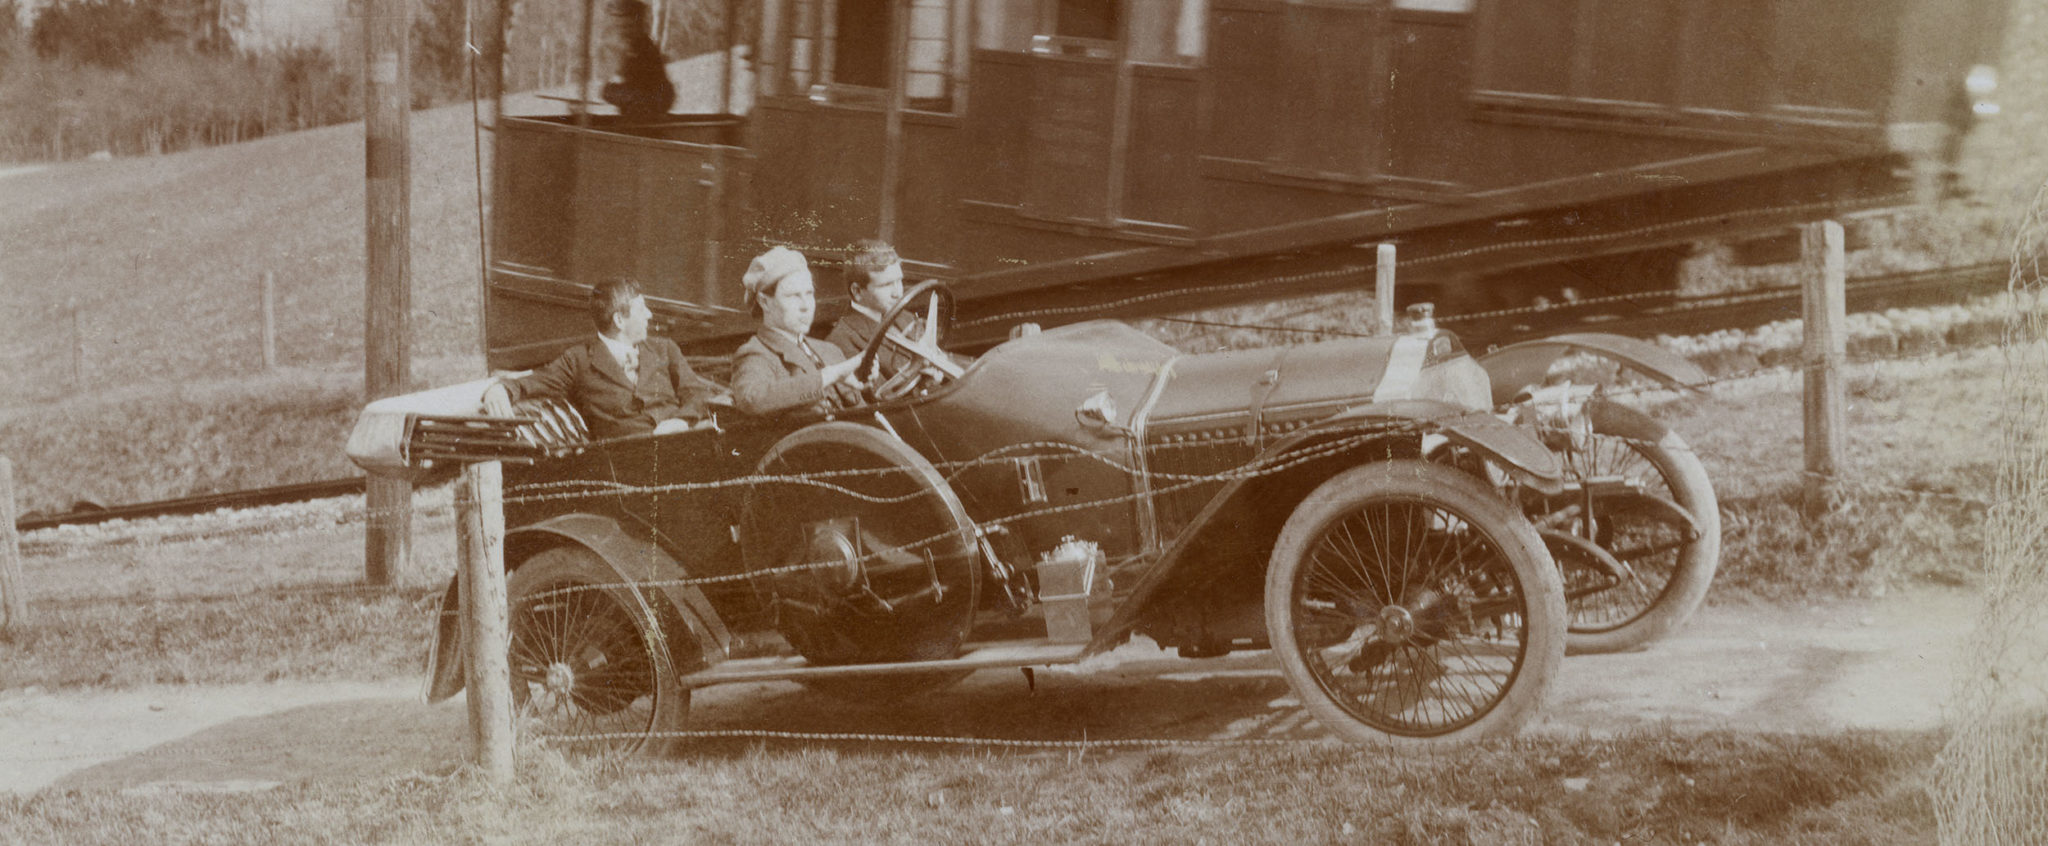 Trois hommes dans une voiture en 1912.